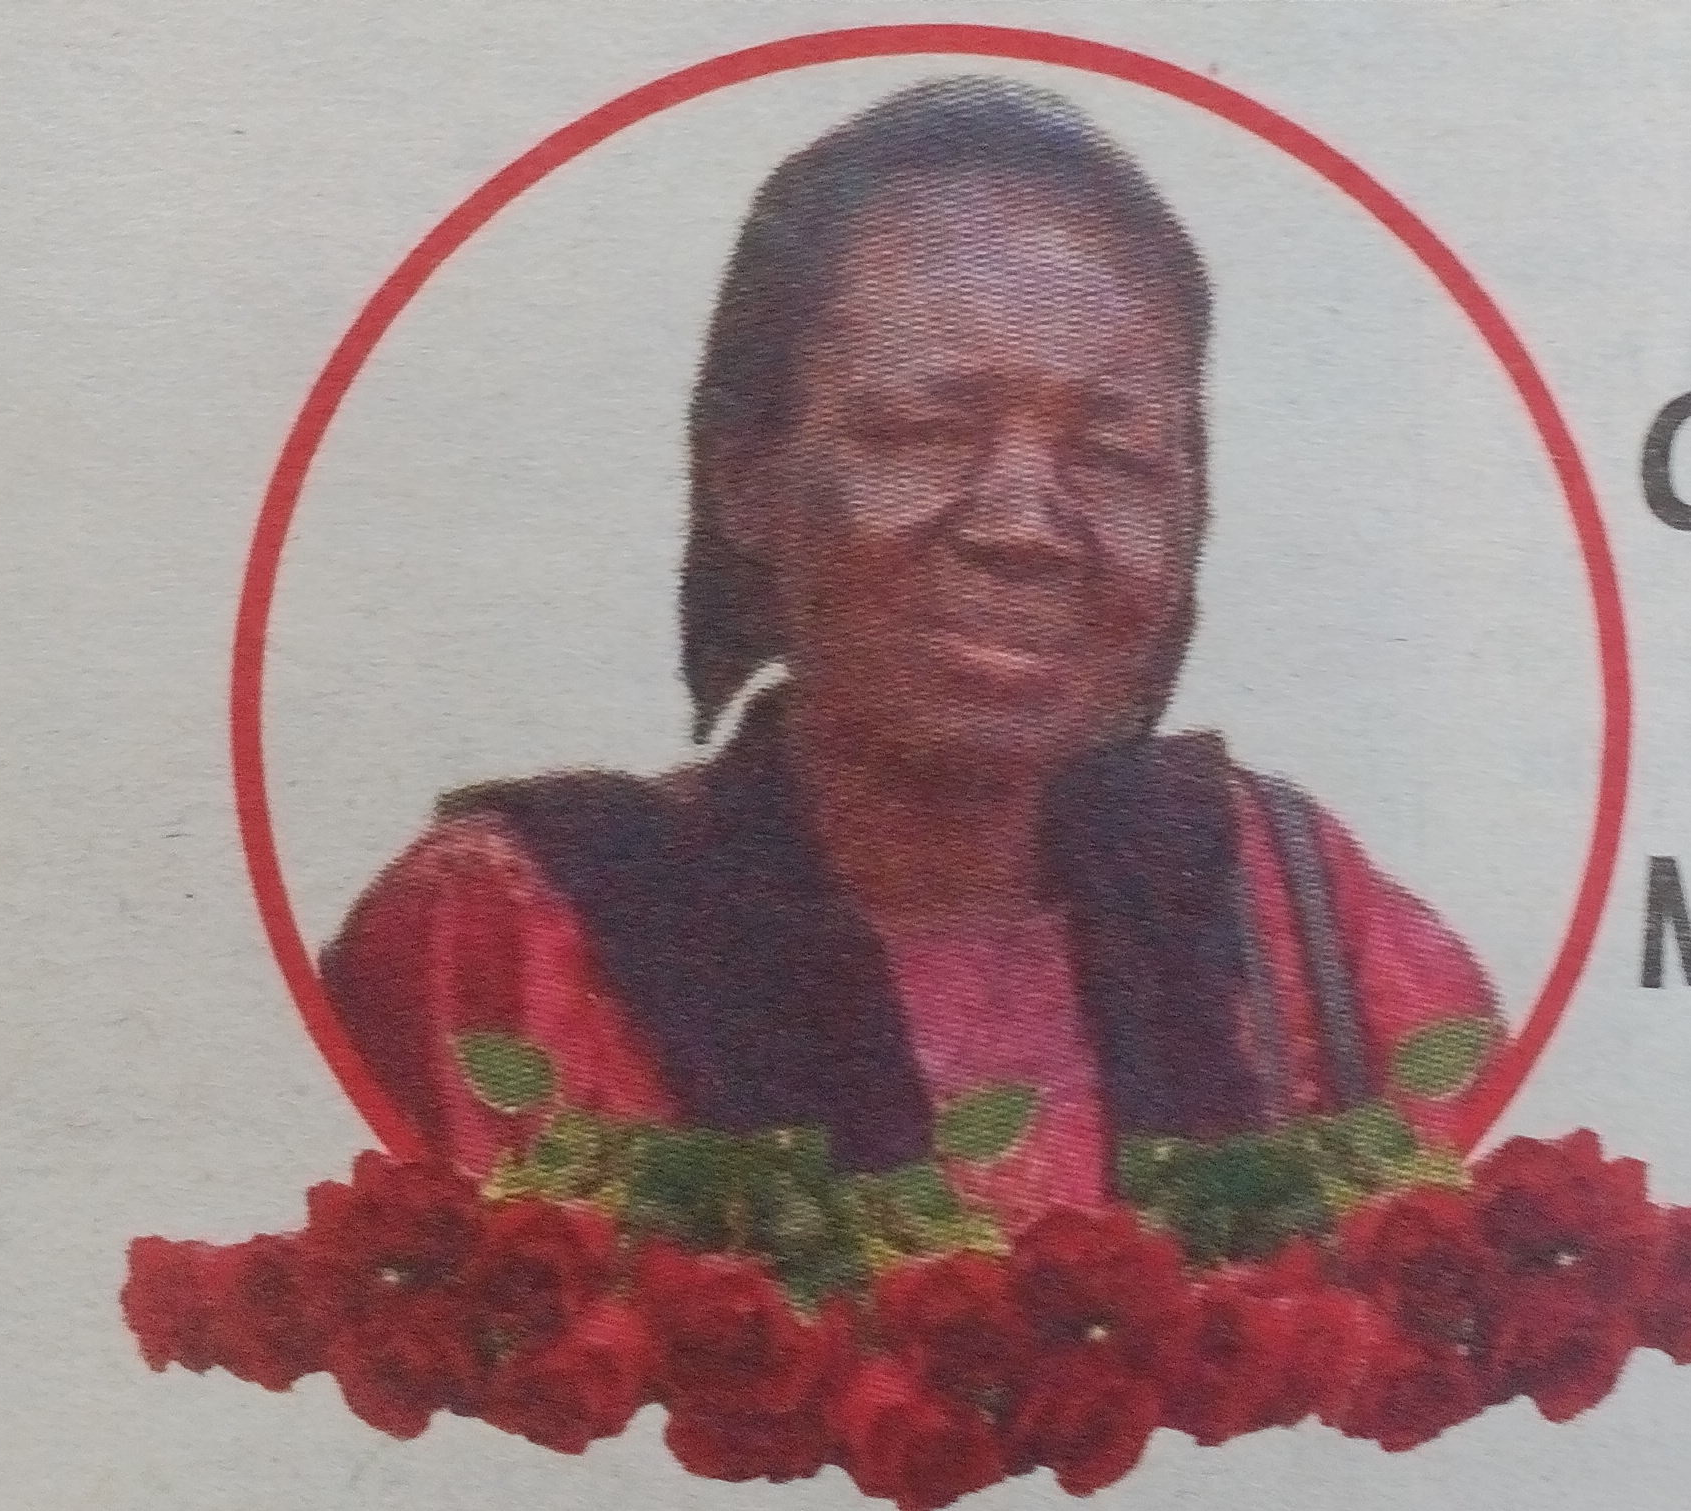 Obituary Image of MAMA MARY A. AENDE